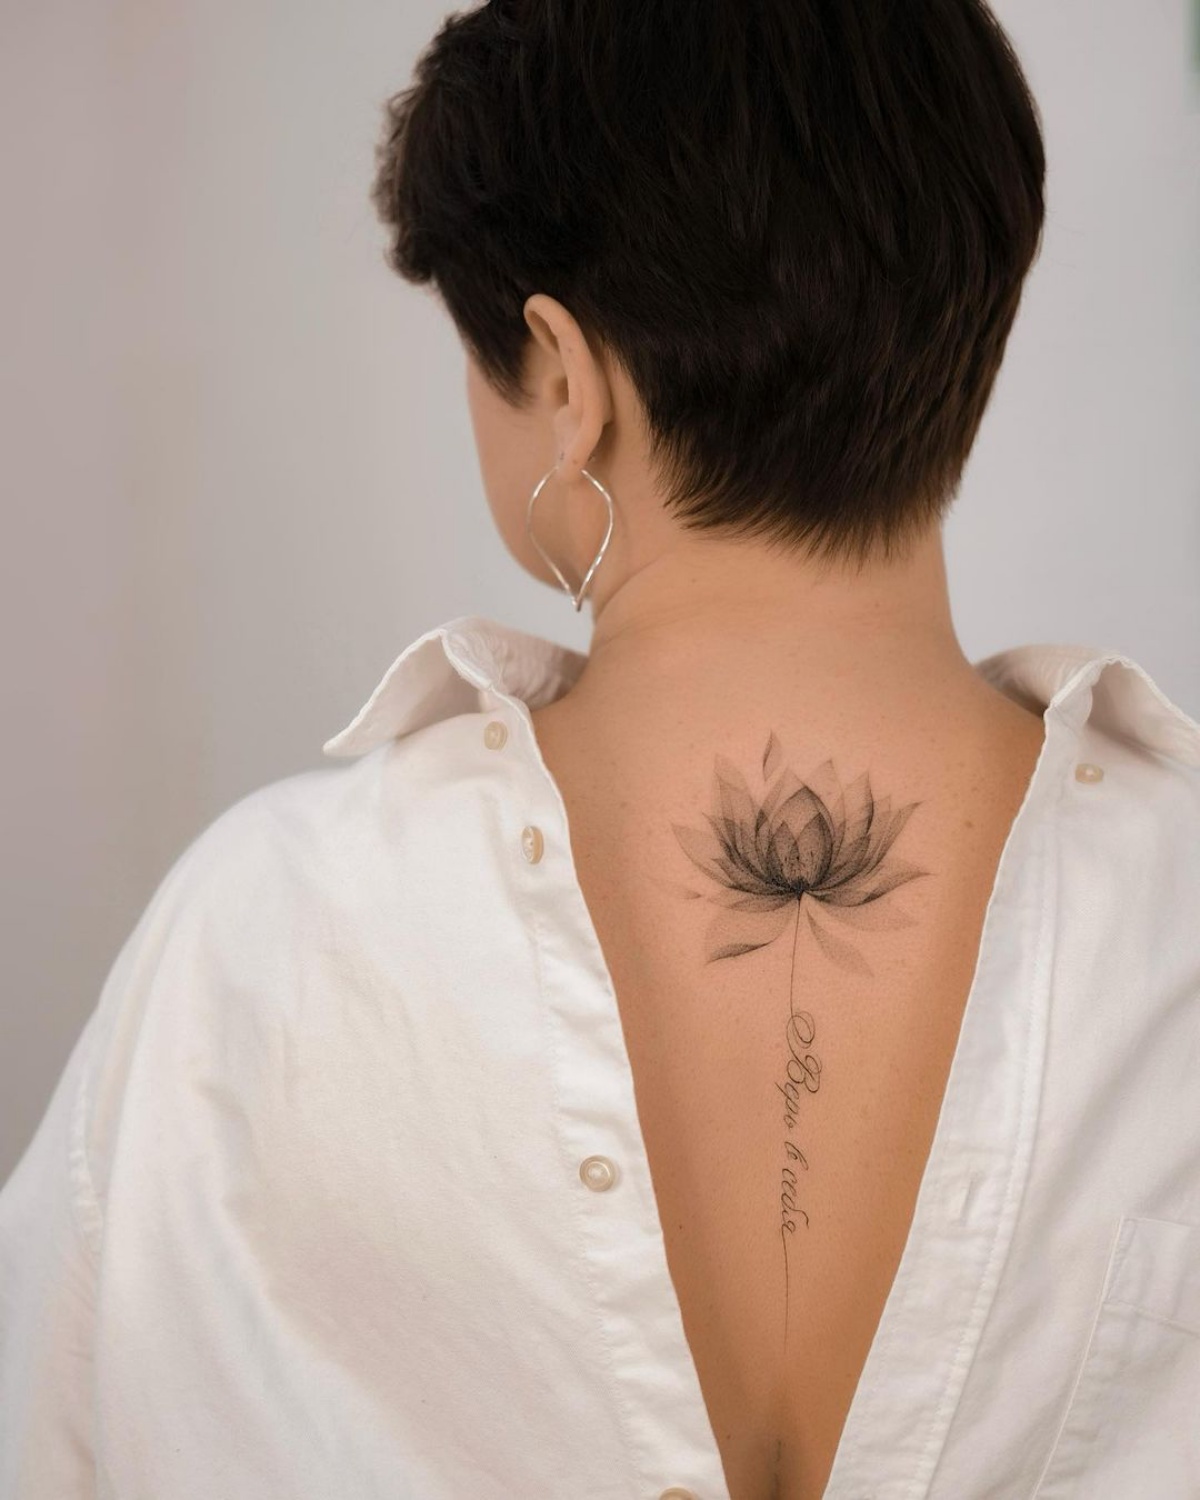 tatuaggio fiore di loto tattoo sulla schiena donna